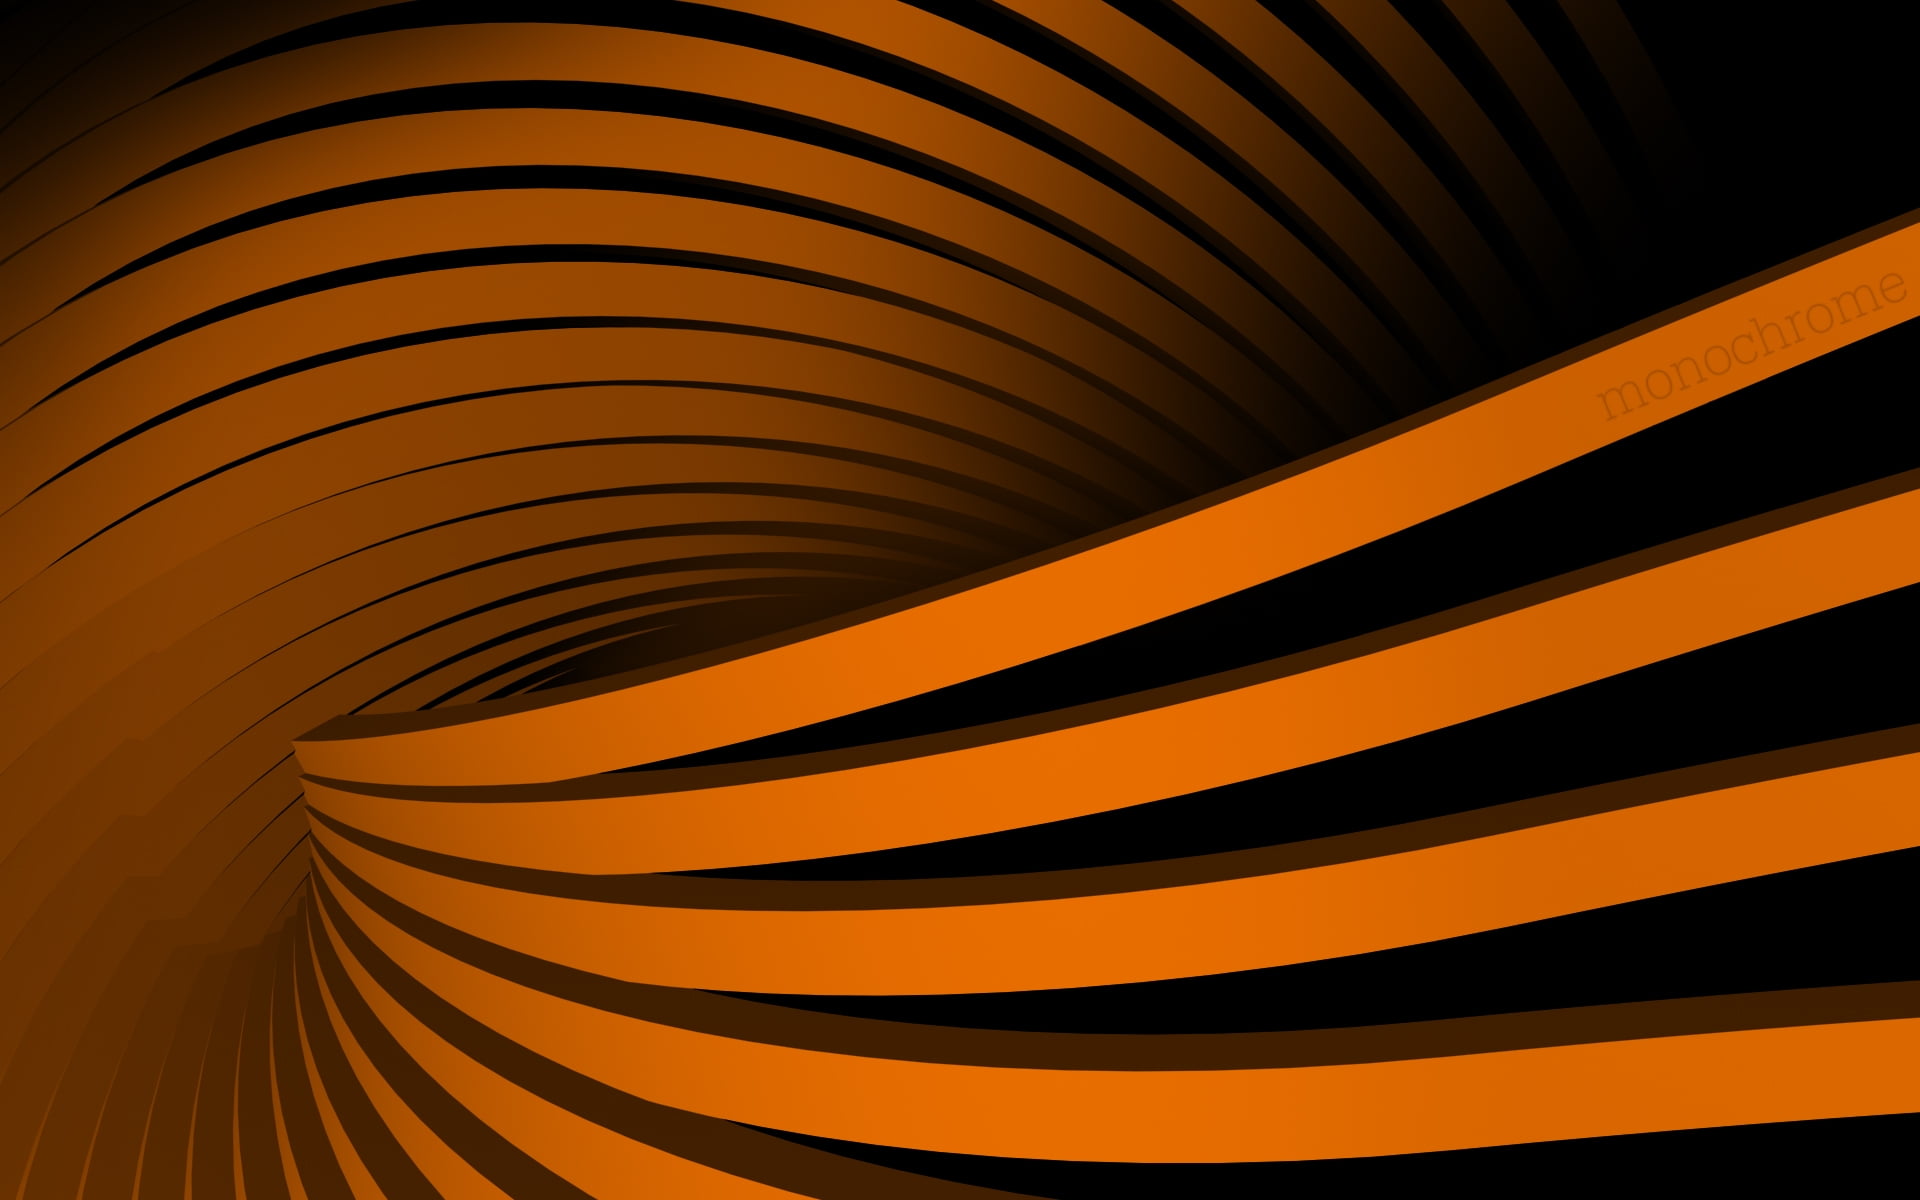 orange and black illusion 3D artwork